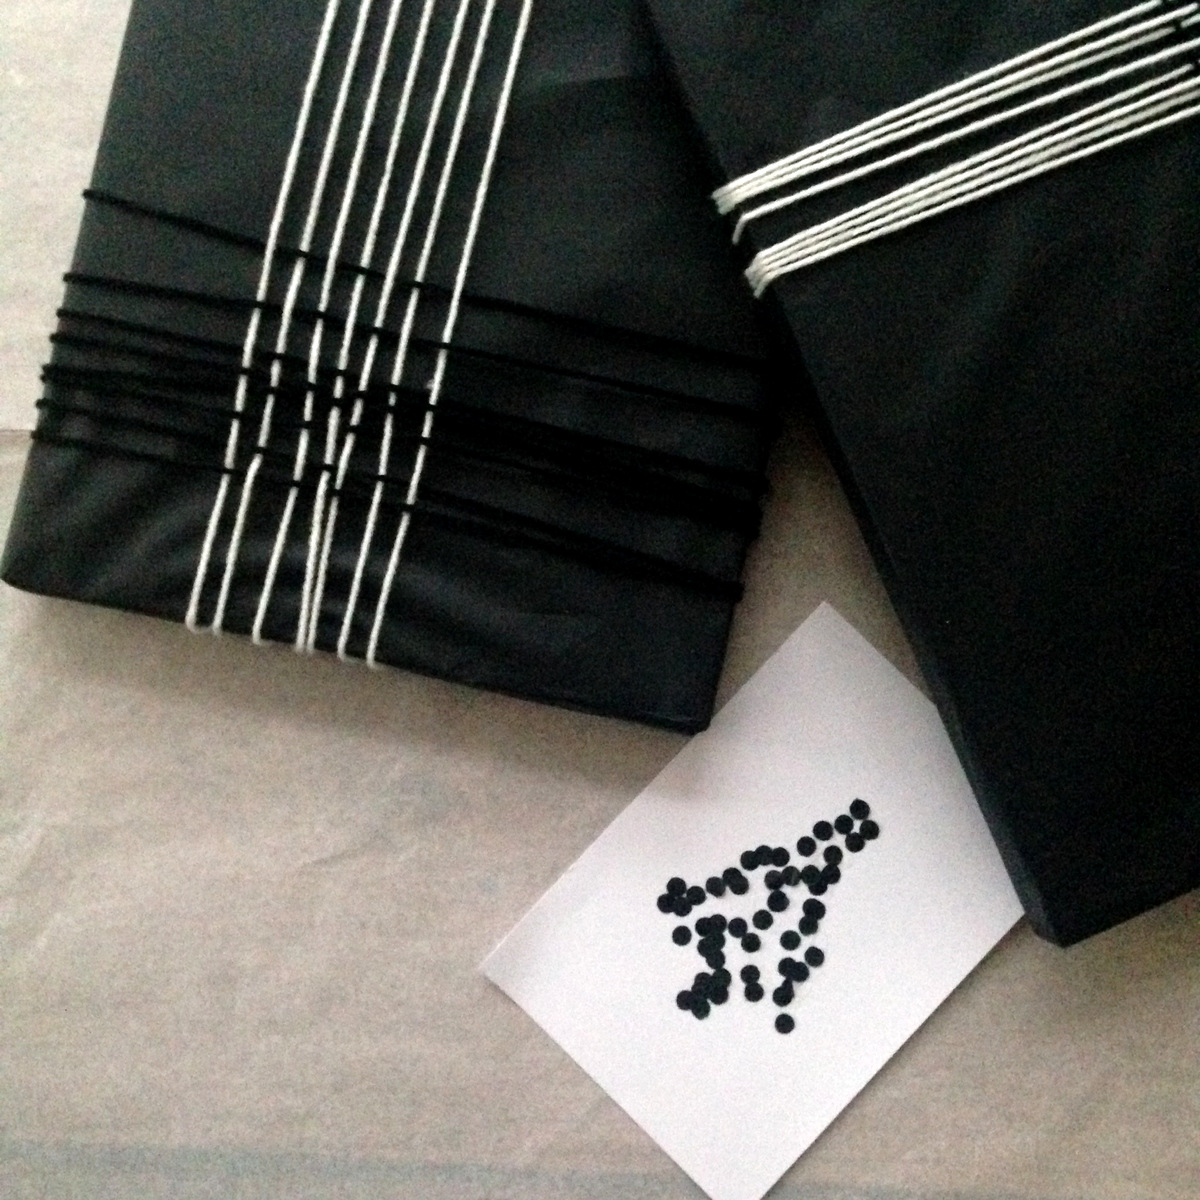 Geschenk verpacken in schwarz und weiß (5) mit Seidenpapier und Garn - Weben